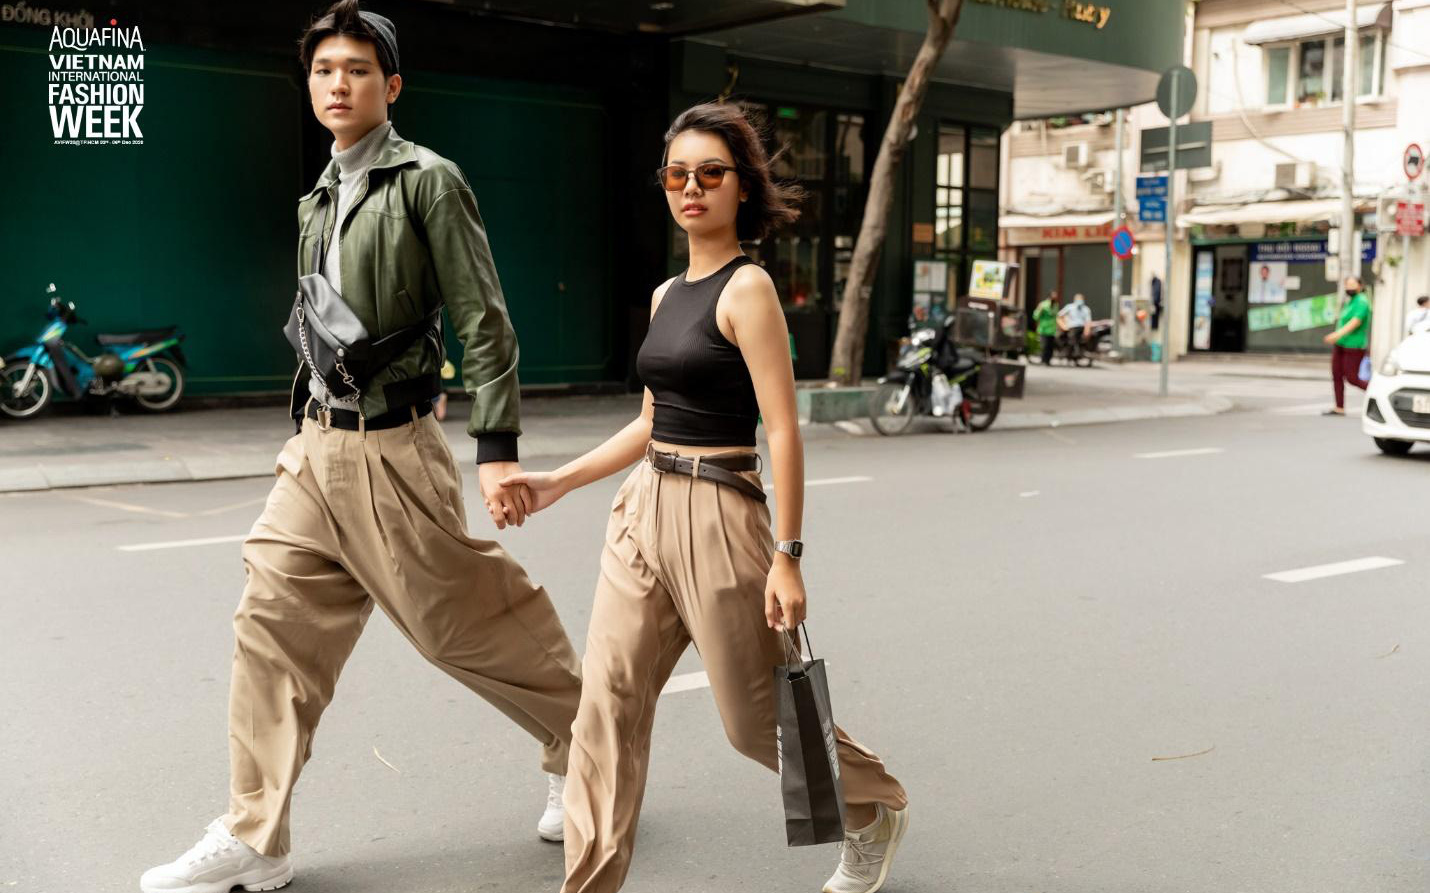 Street style của người Việt trẻ tại Aquafina Tuần lễ Thời trang: Thế hiện chất riêng, không ngại phá cách, còn có cơ hội rinh AirPods Pro thì tội gì không thử?